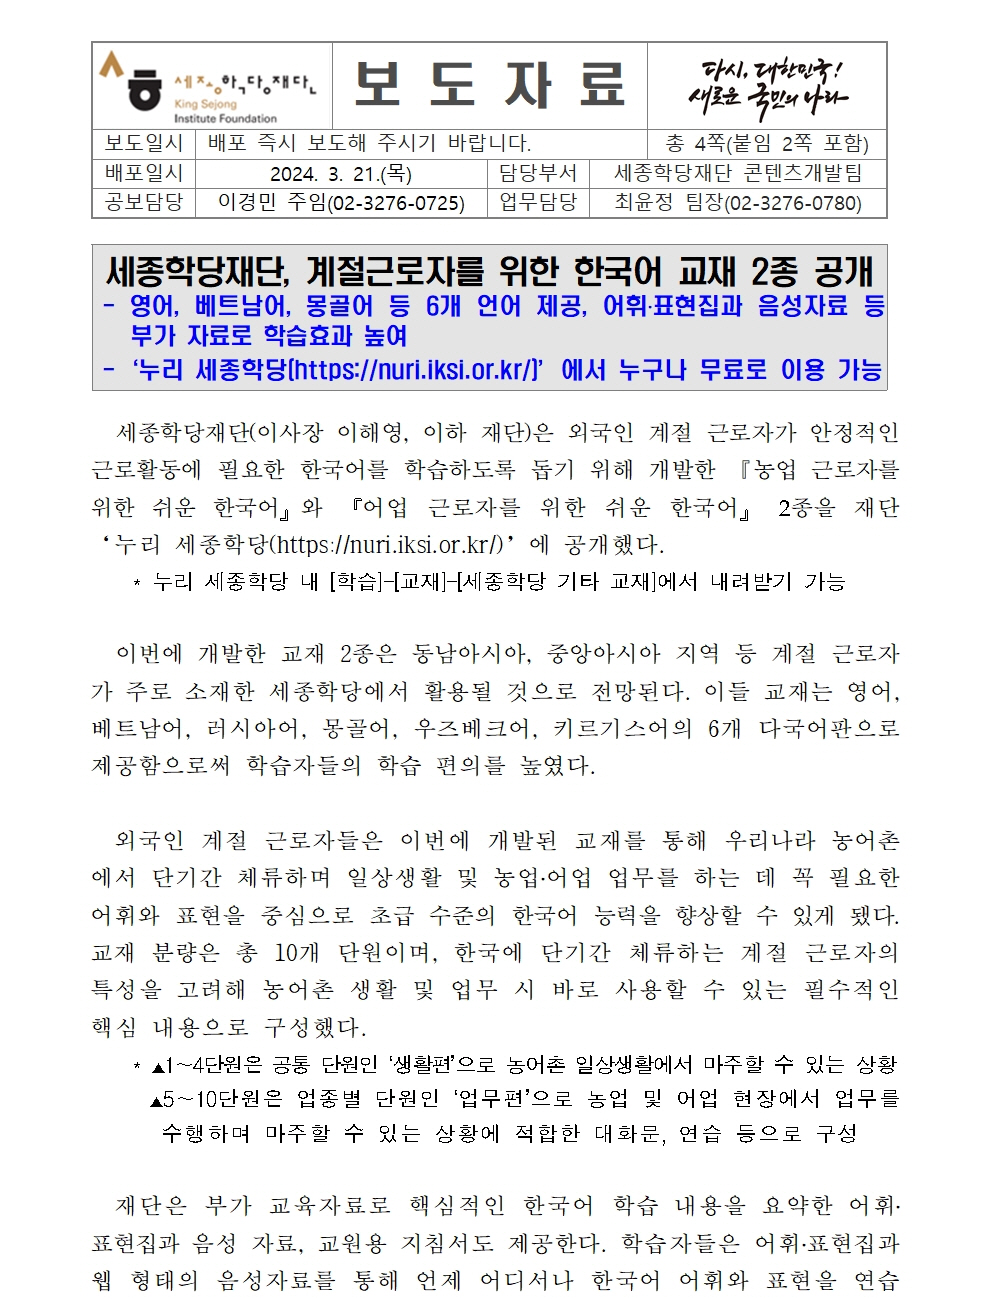 세종학당재단 계절 근로자를 위한 한국어 교재 2종 공개(보도자료)001